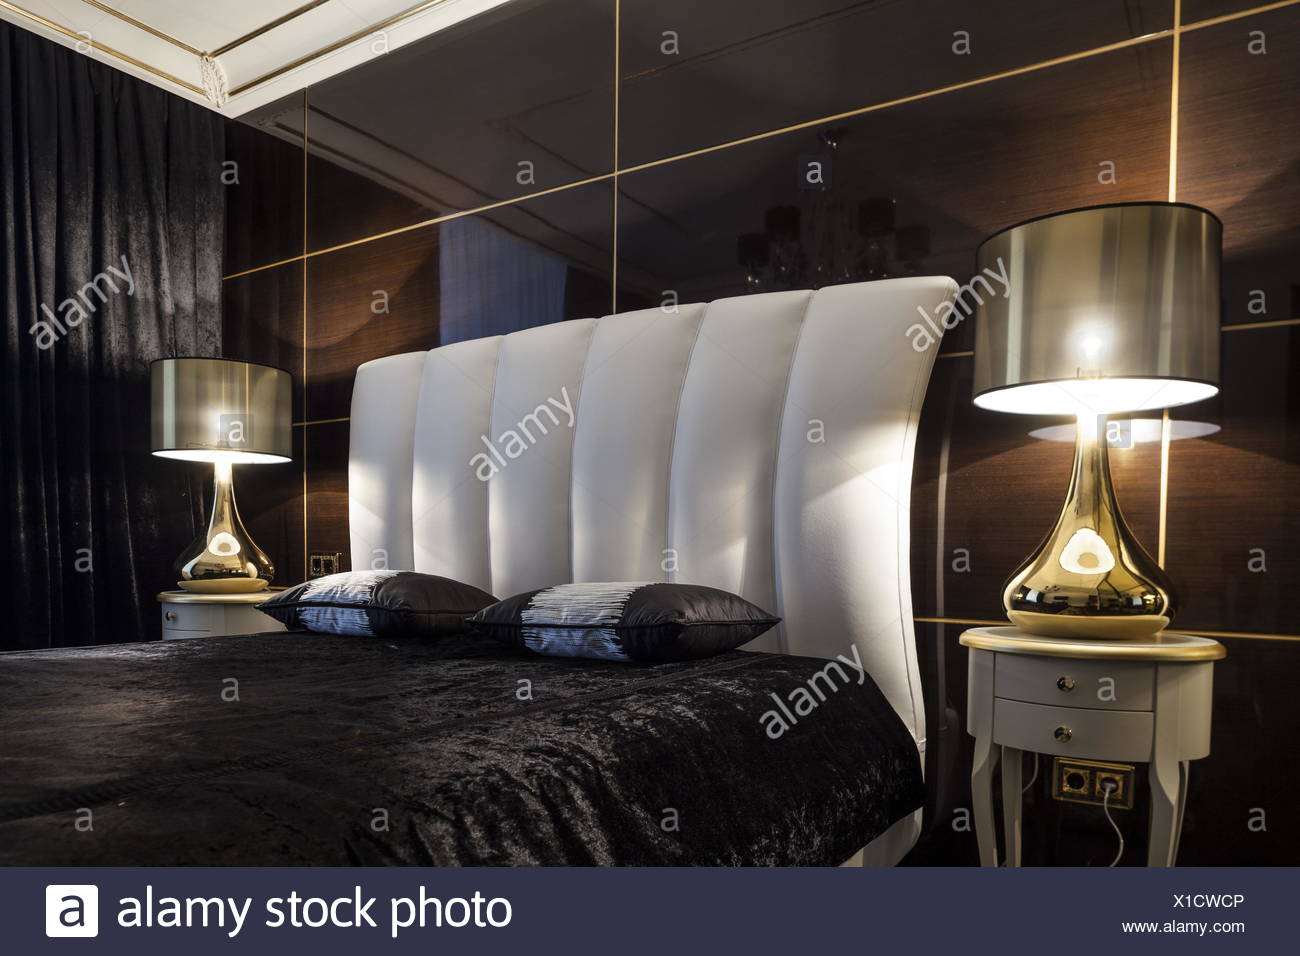 Innen Schlafzimmer Bett In Dunklen Farben Stockfoto Bild